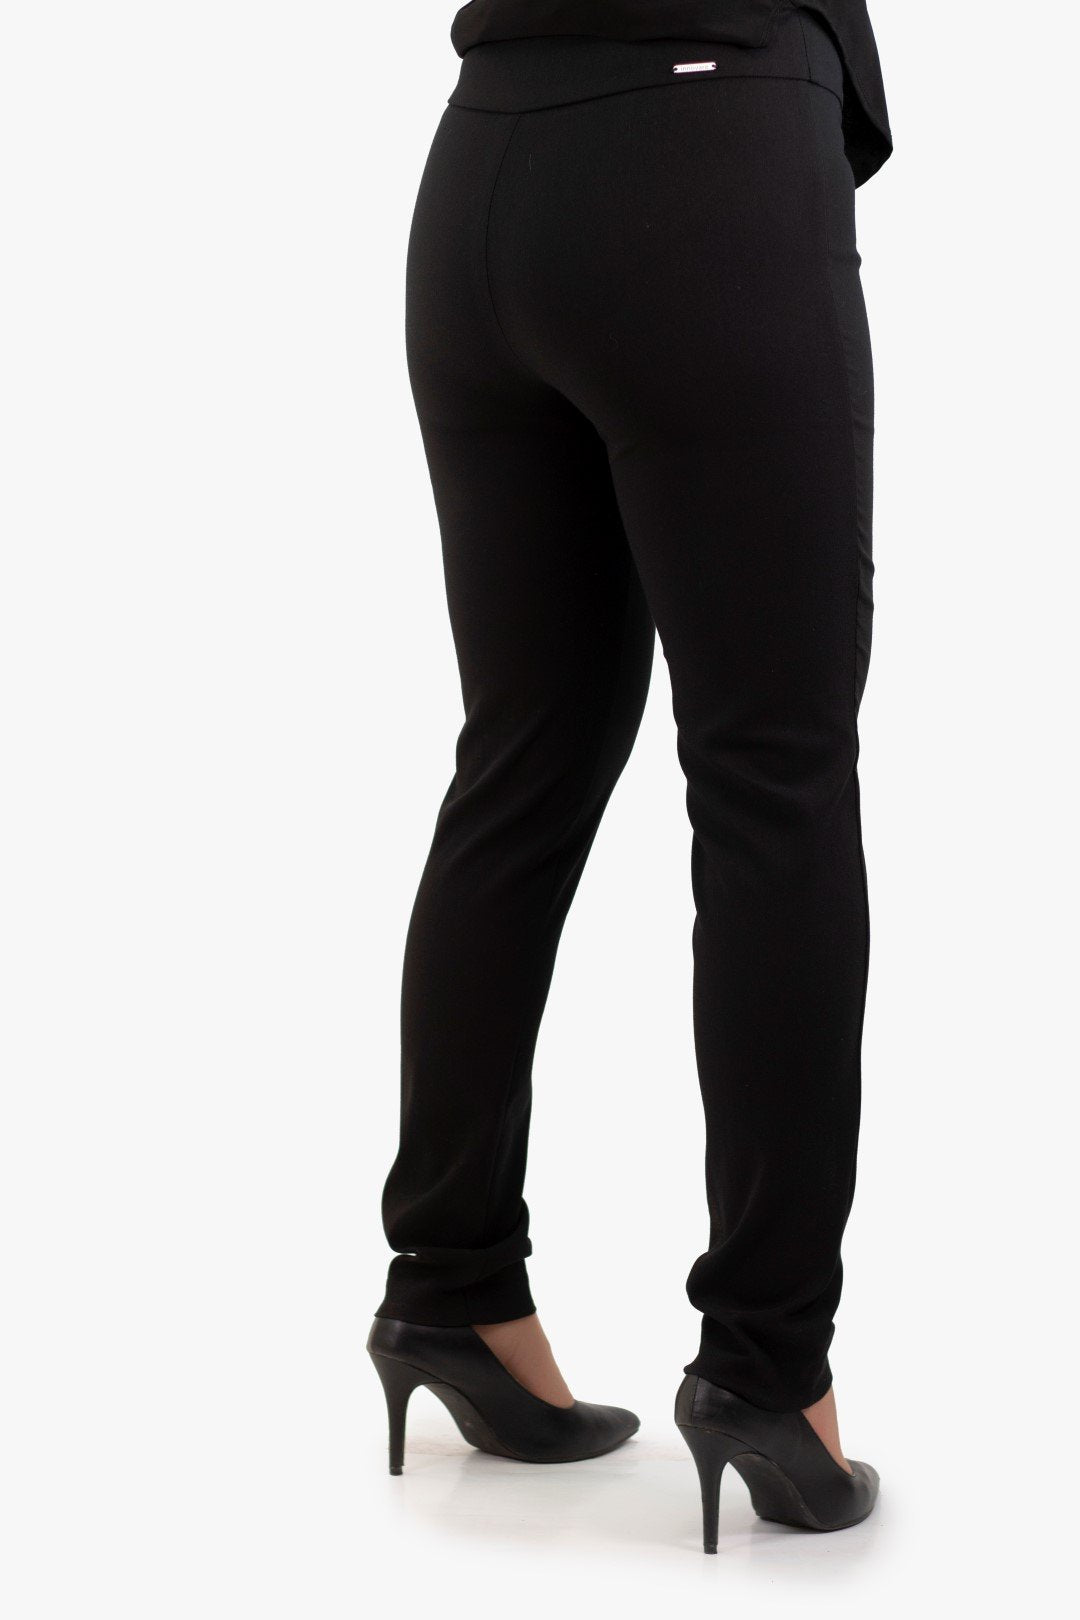 Pantalon Innovaré De Couleur Noir (Inno-66882Bo) Femme